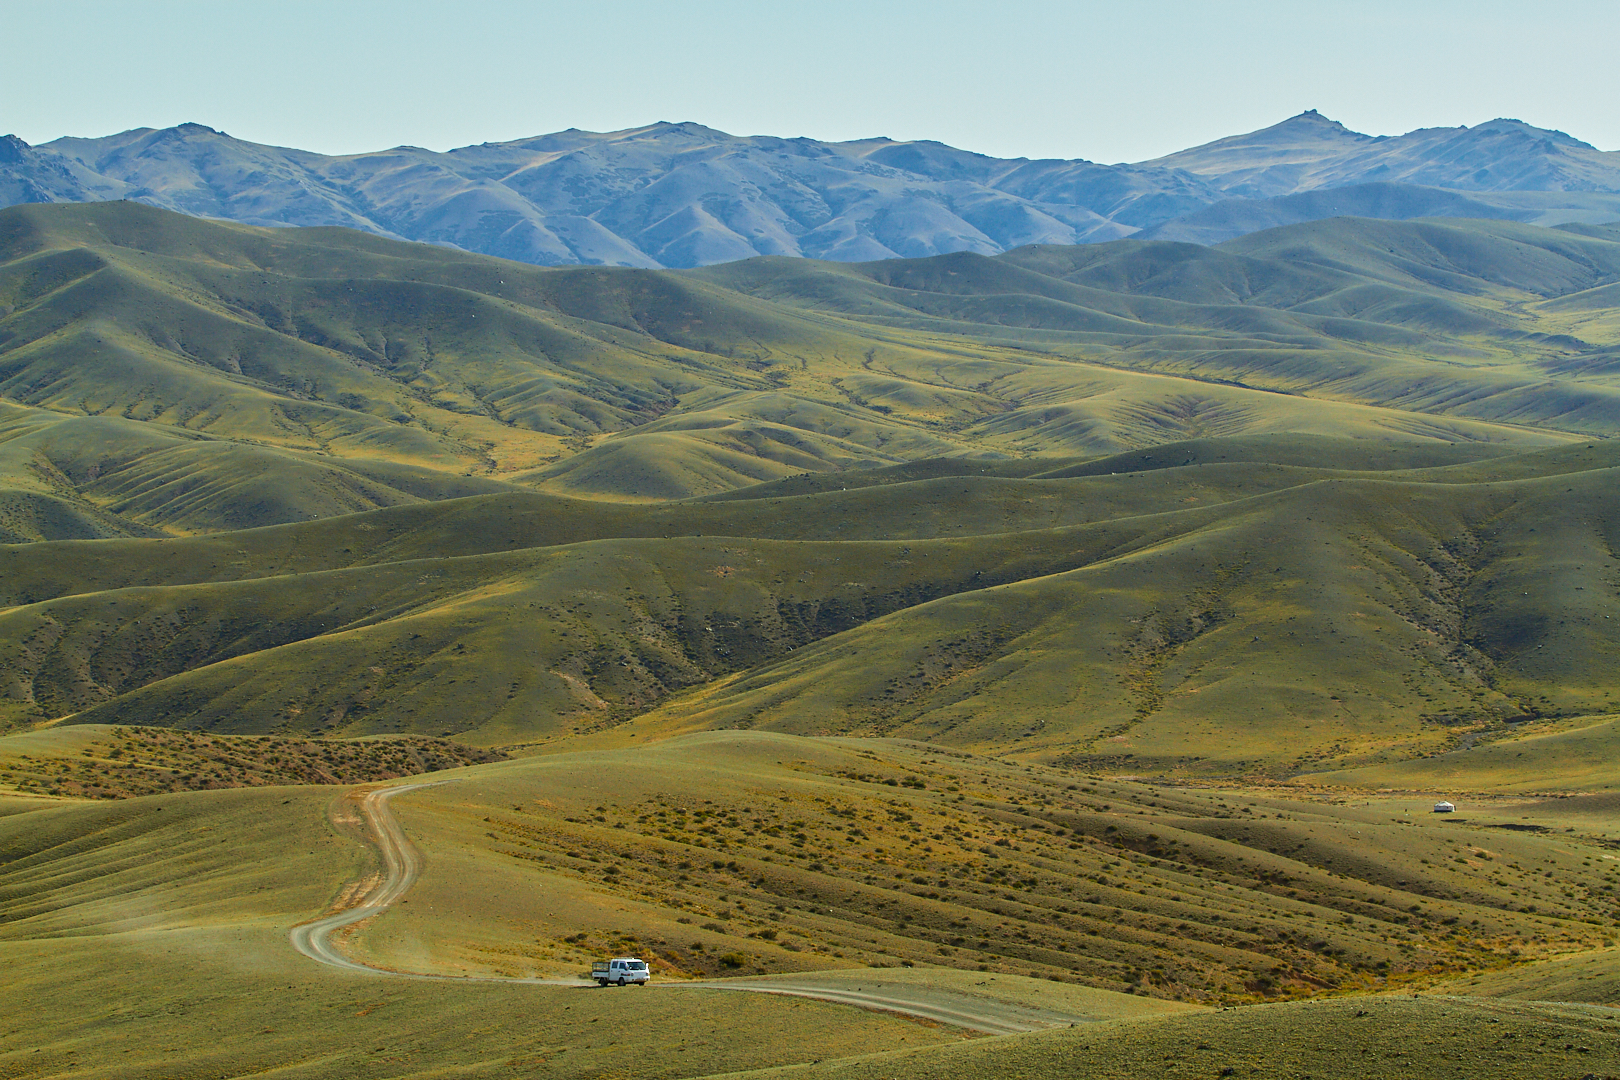 Patrice Pvk Photo | Photographie d'art | Camion traversant les montagnes de Khangai Nuruu en Mongolie Centrale